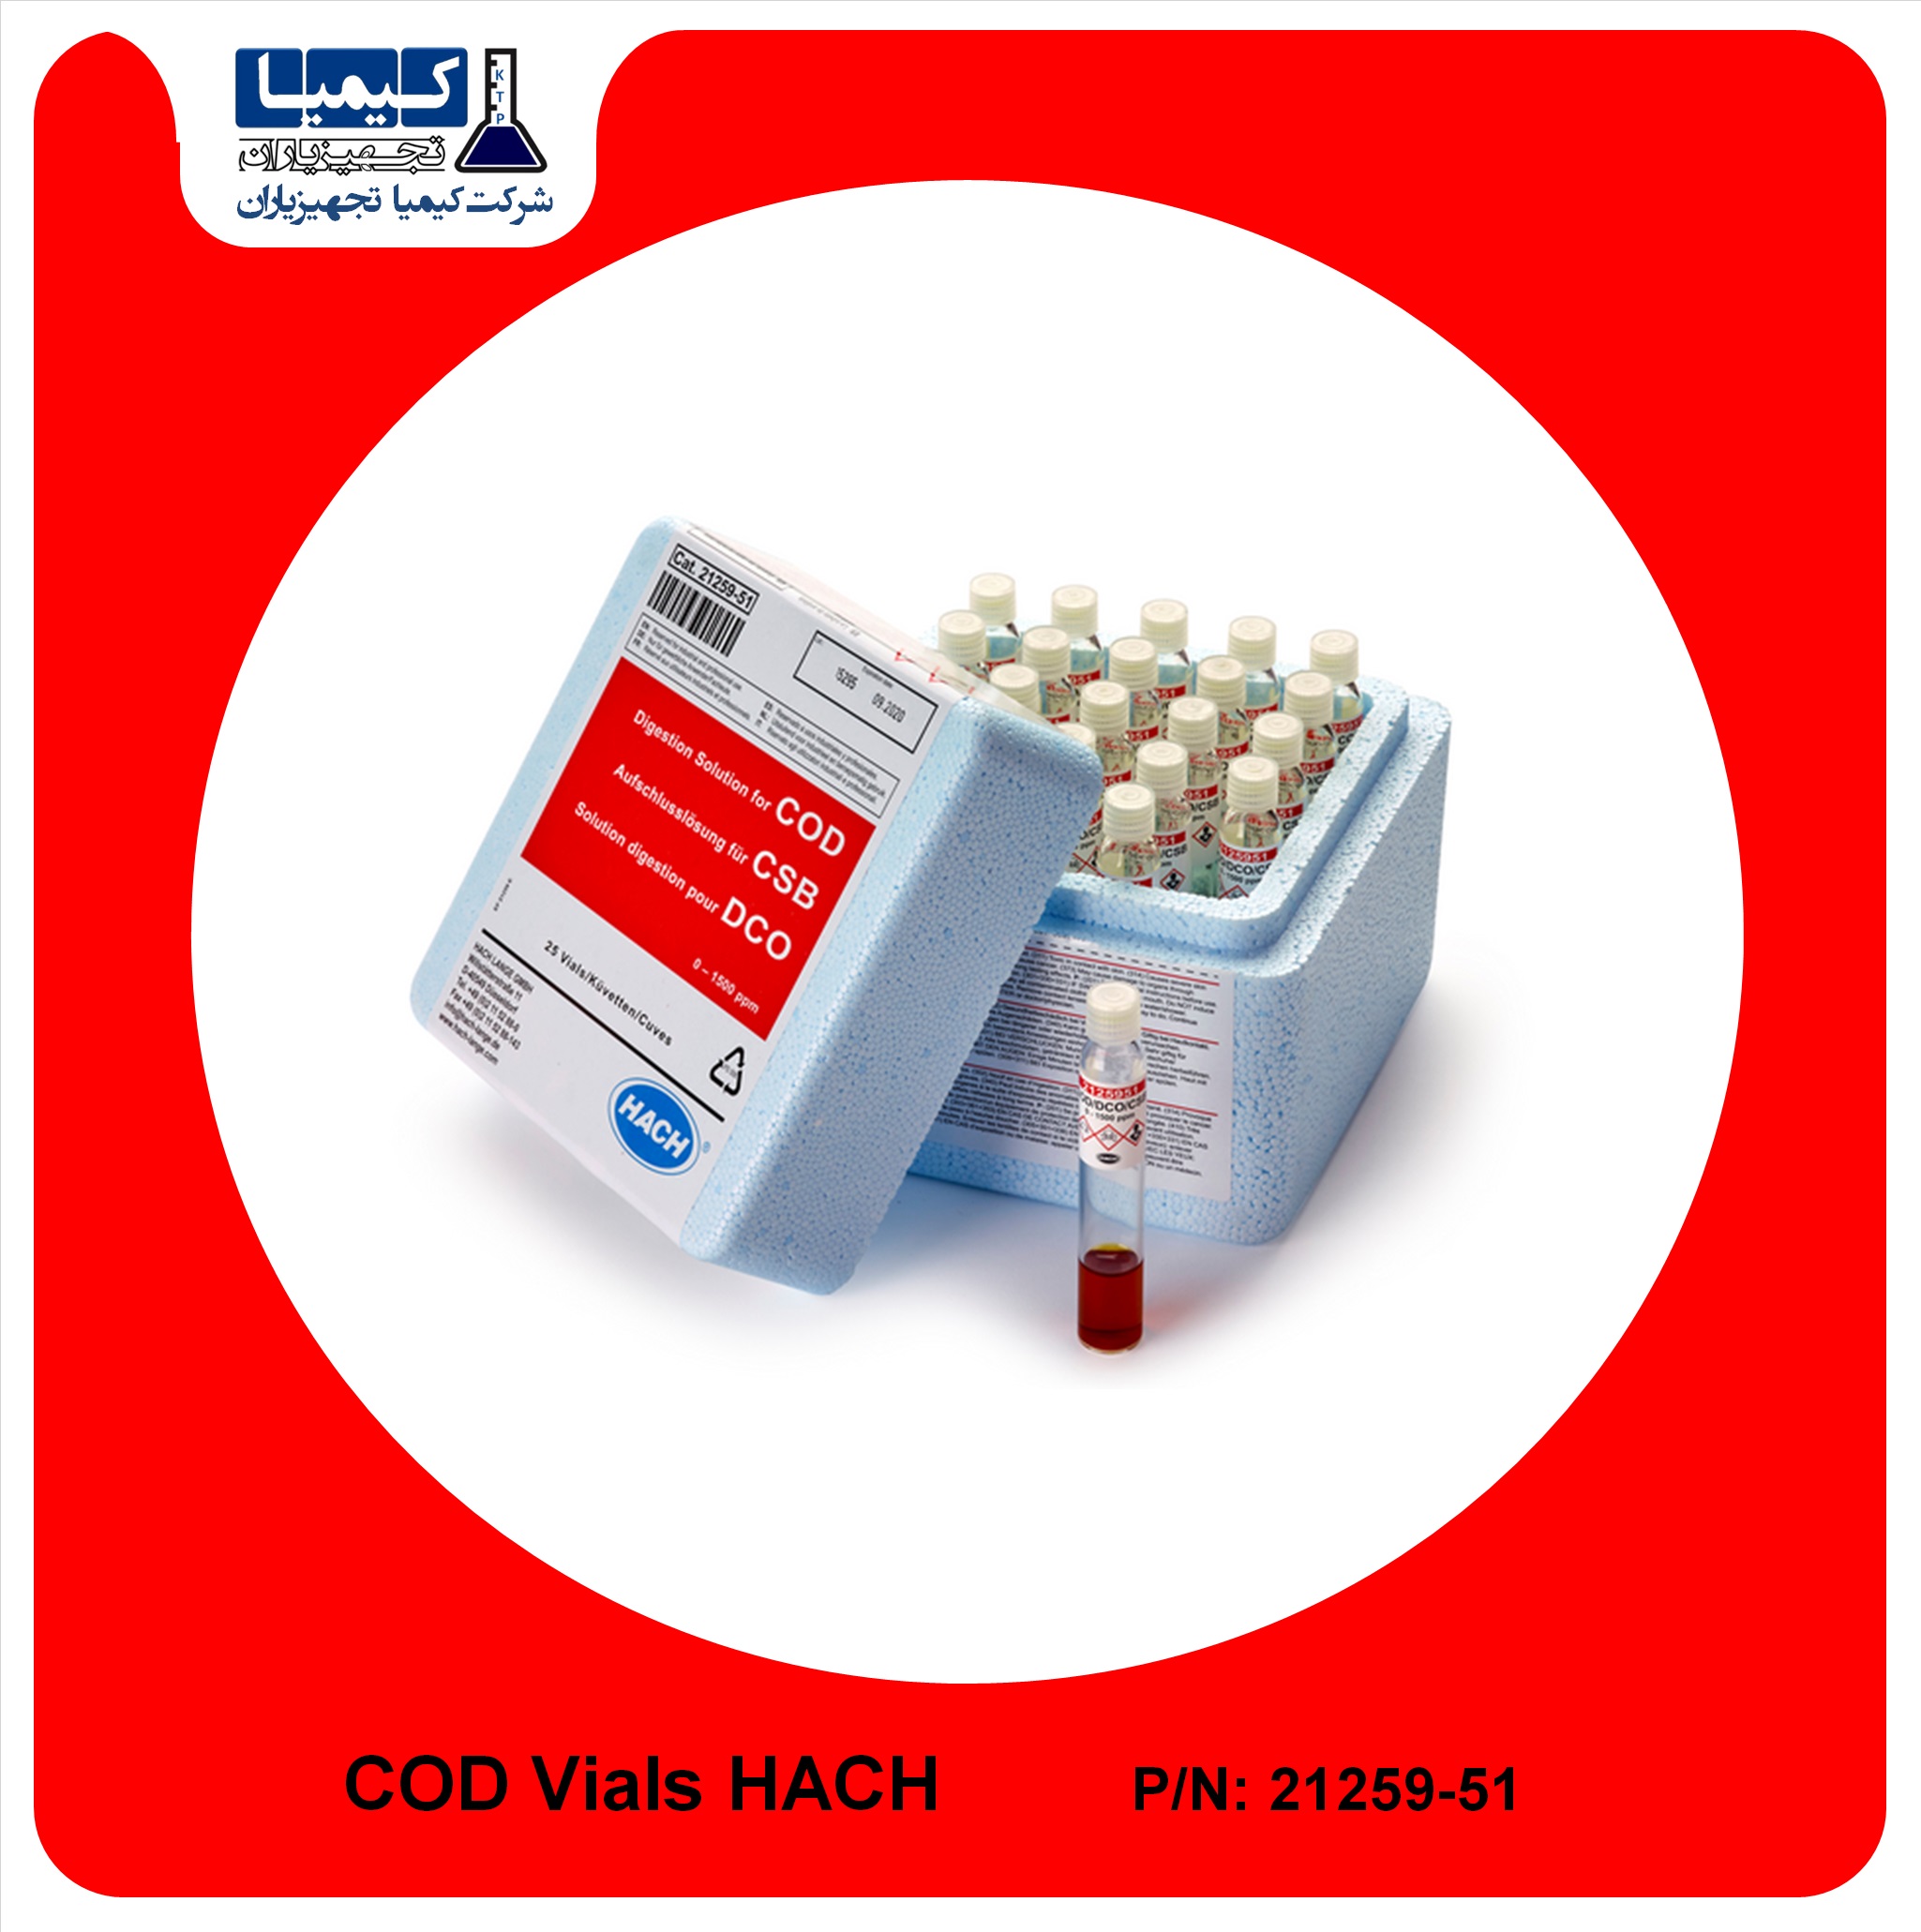 ویال COD رنج 0-1500 mg/l کمپانی HACH